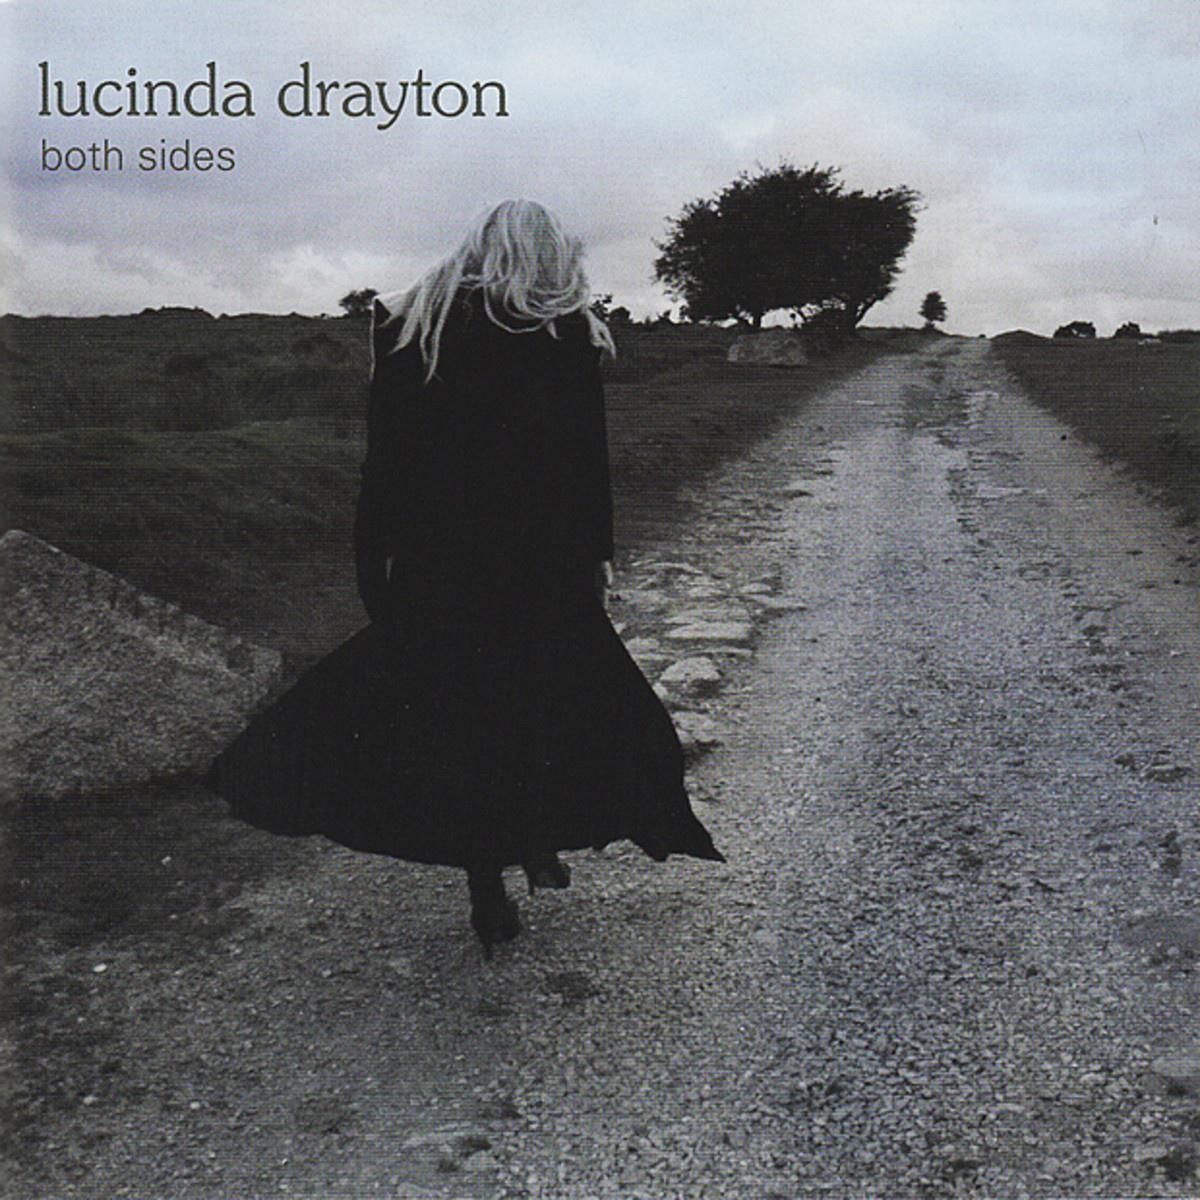 Lucinda Drayton - Fields Of Gold (Studio Cover)